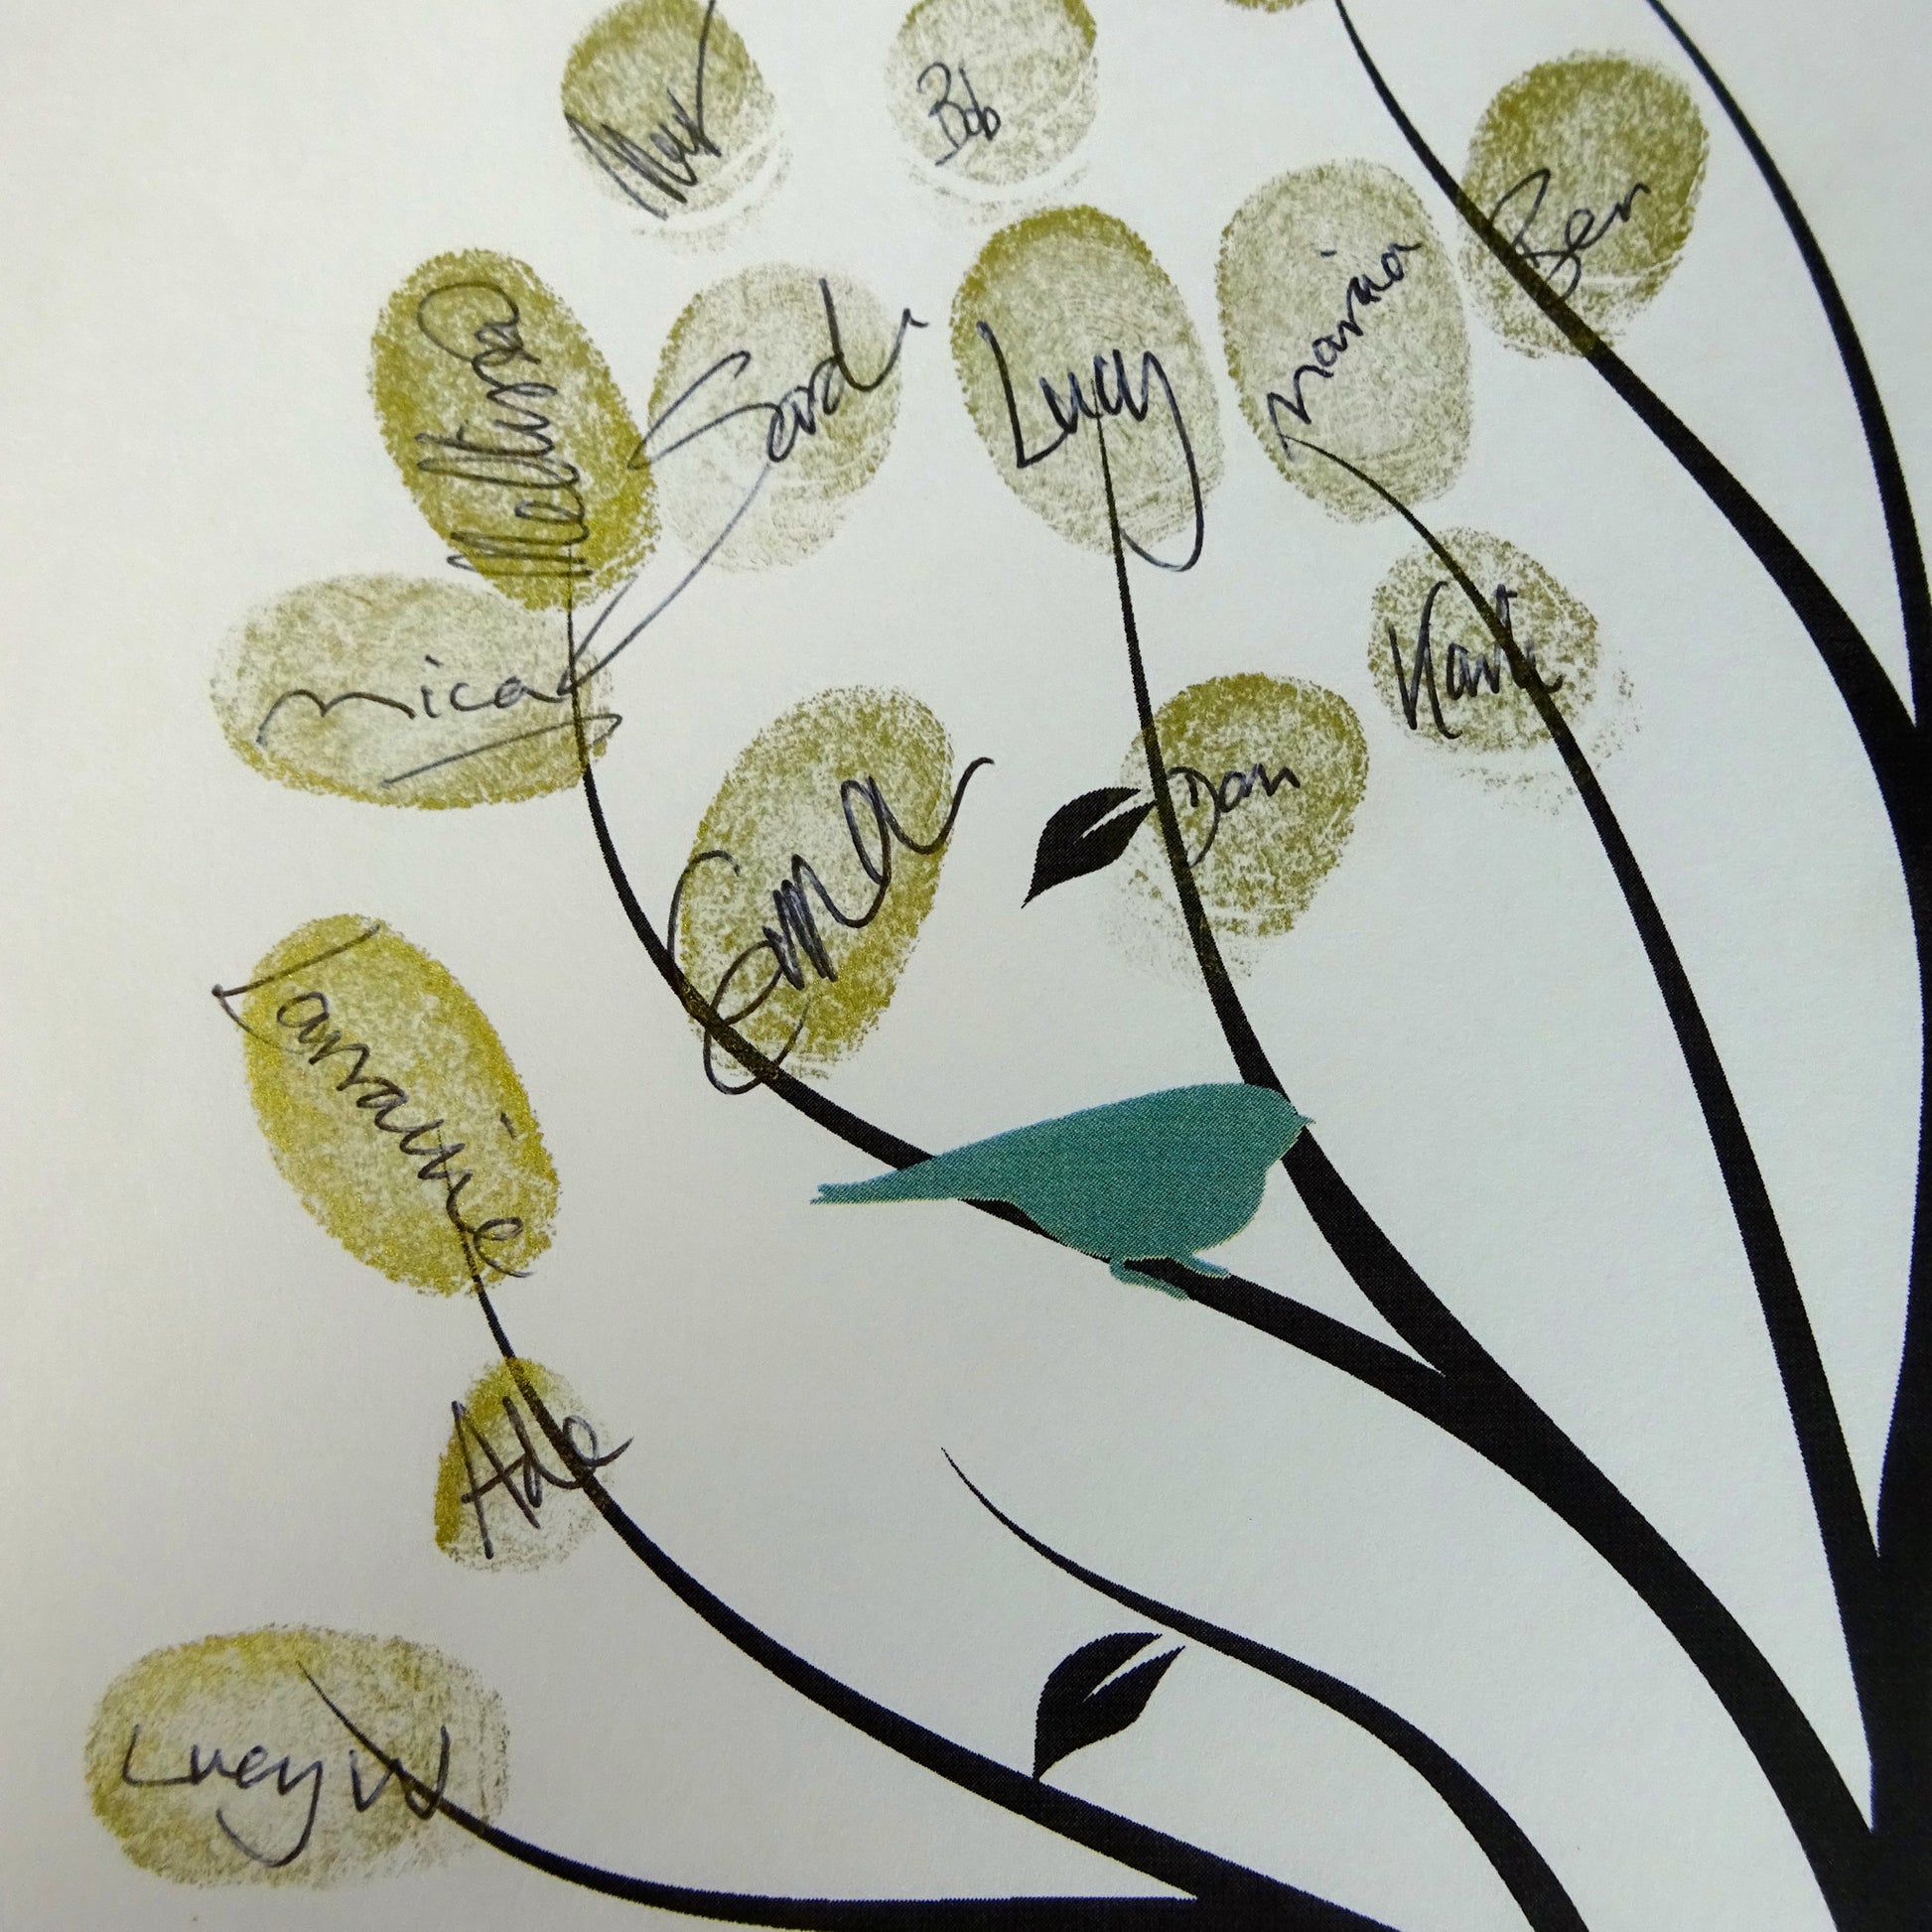 Fingerprint tree / fingerprint leaves, green birds